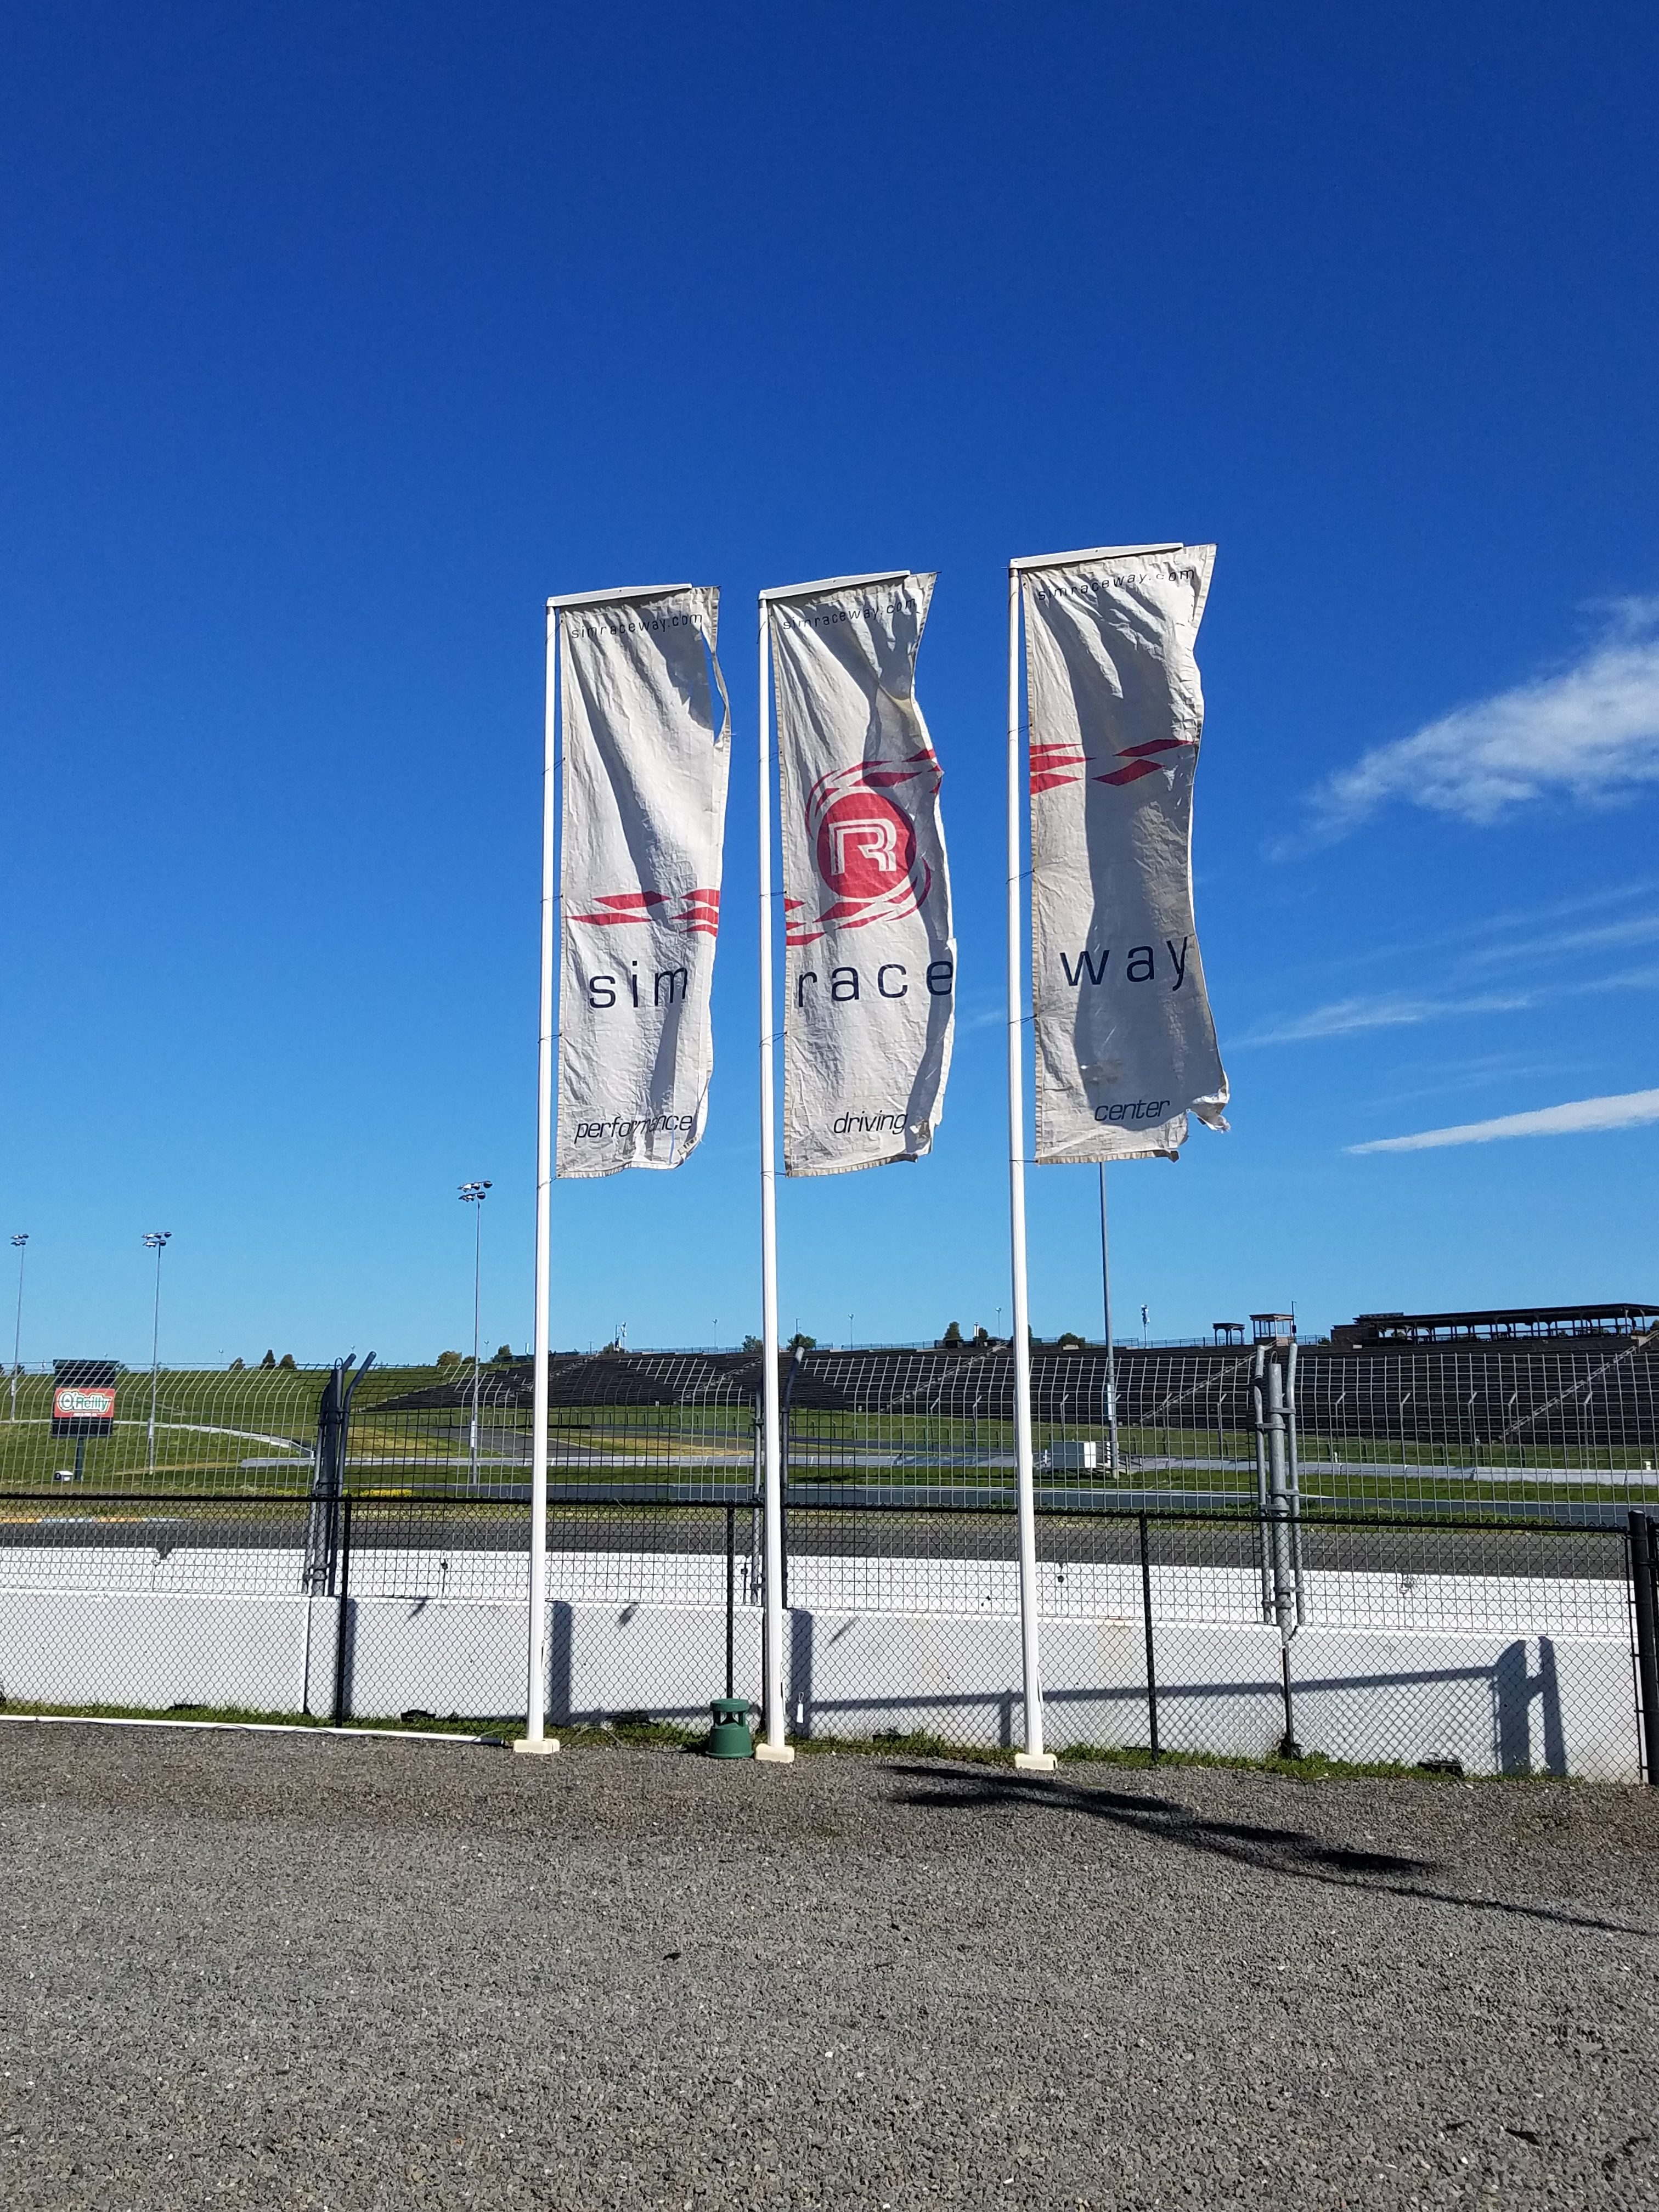 sonoma raceway flags